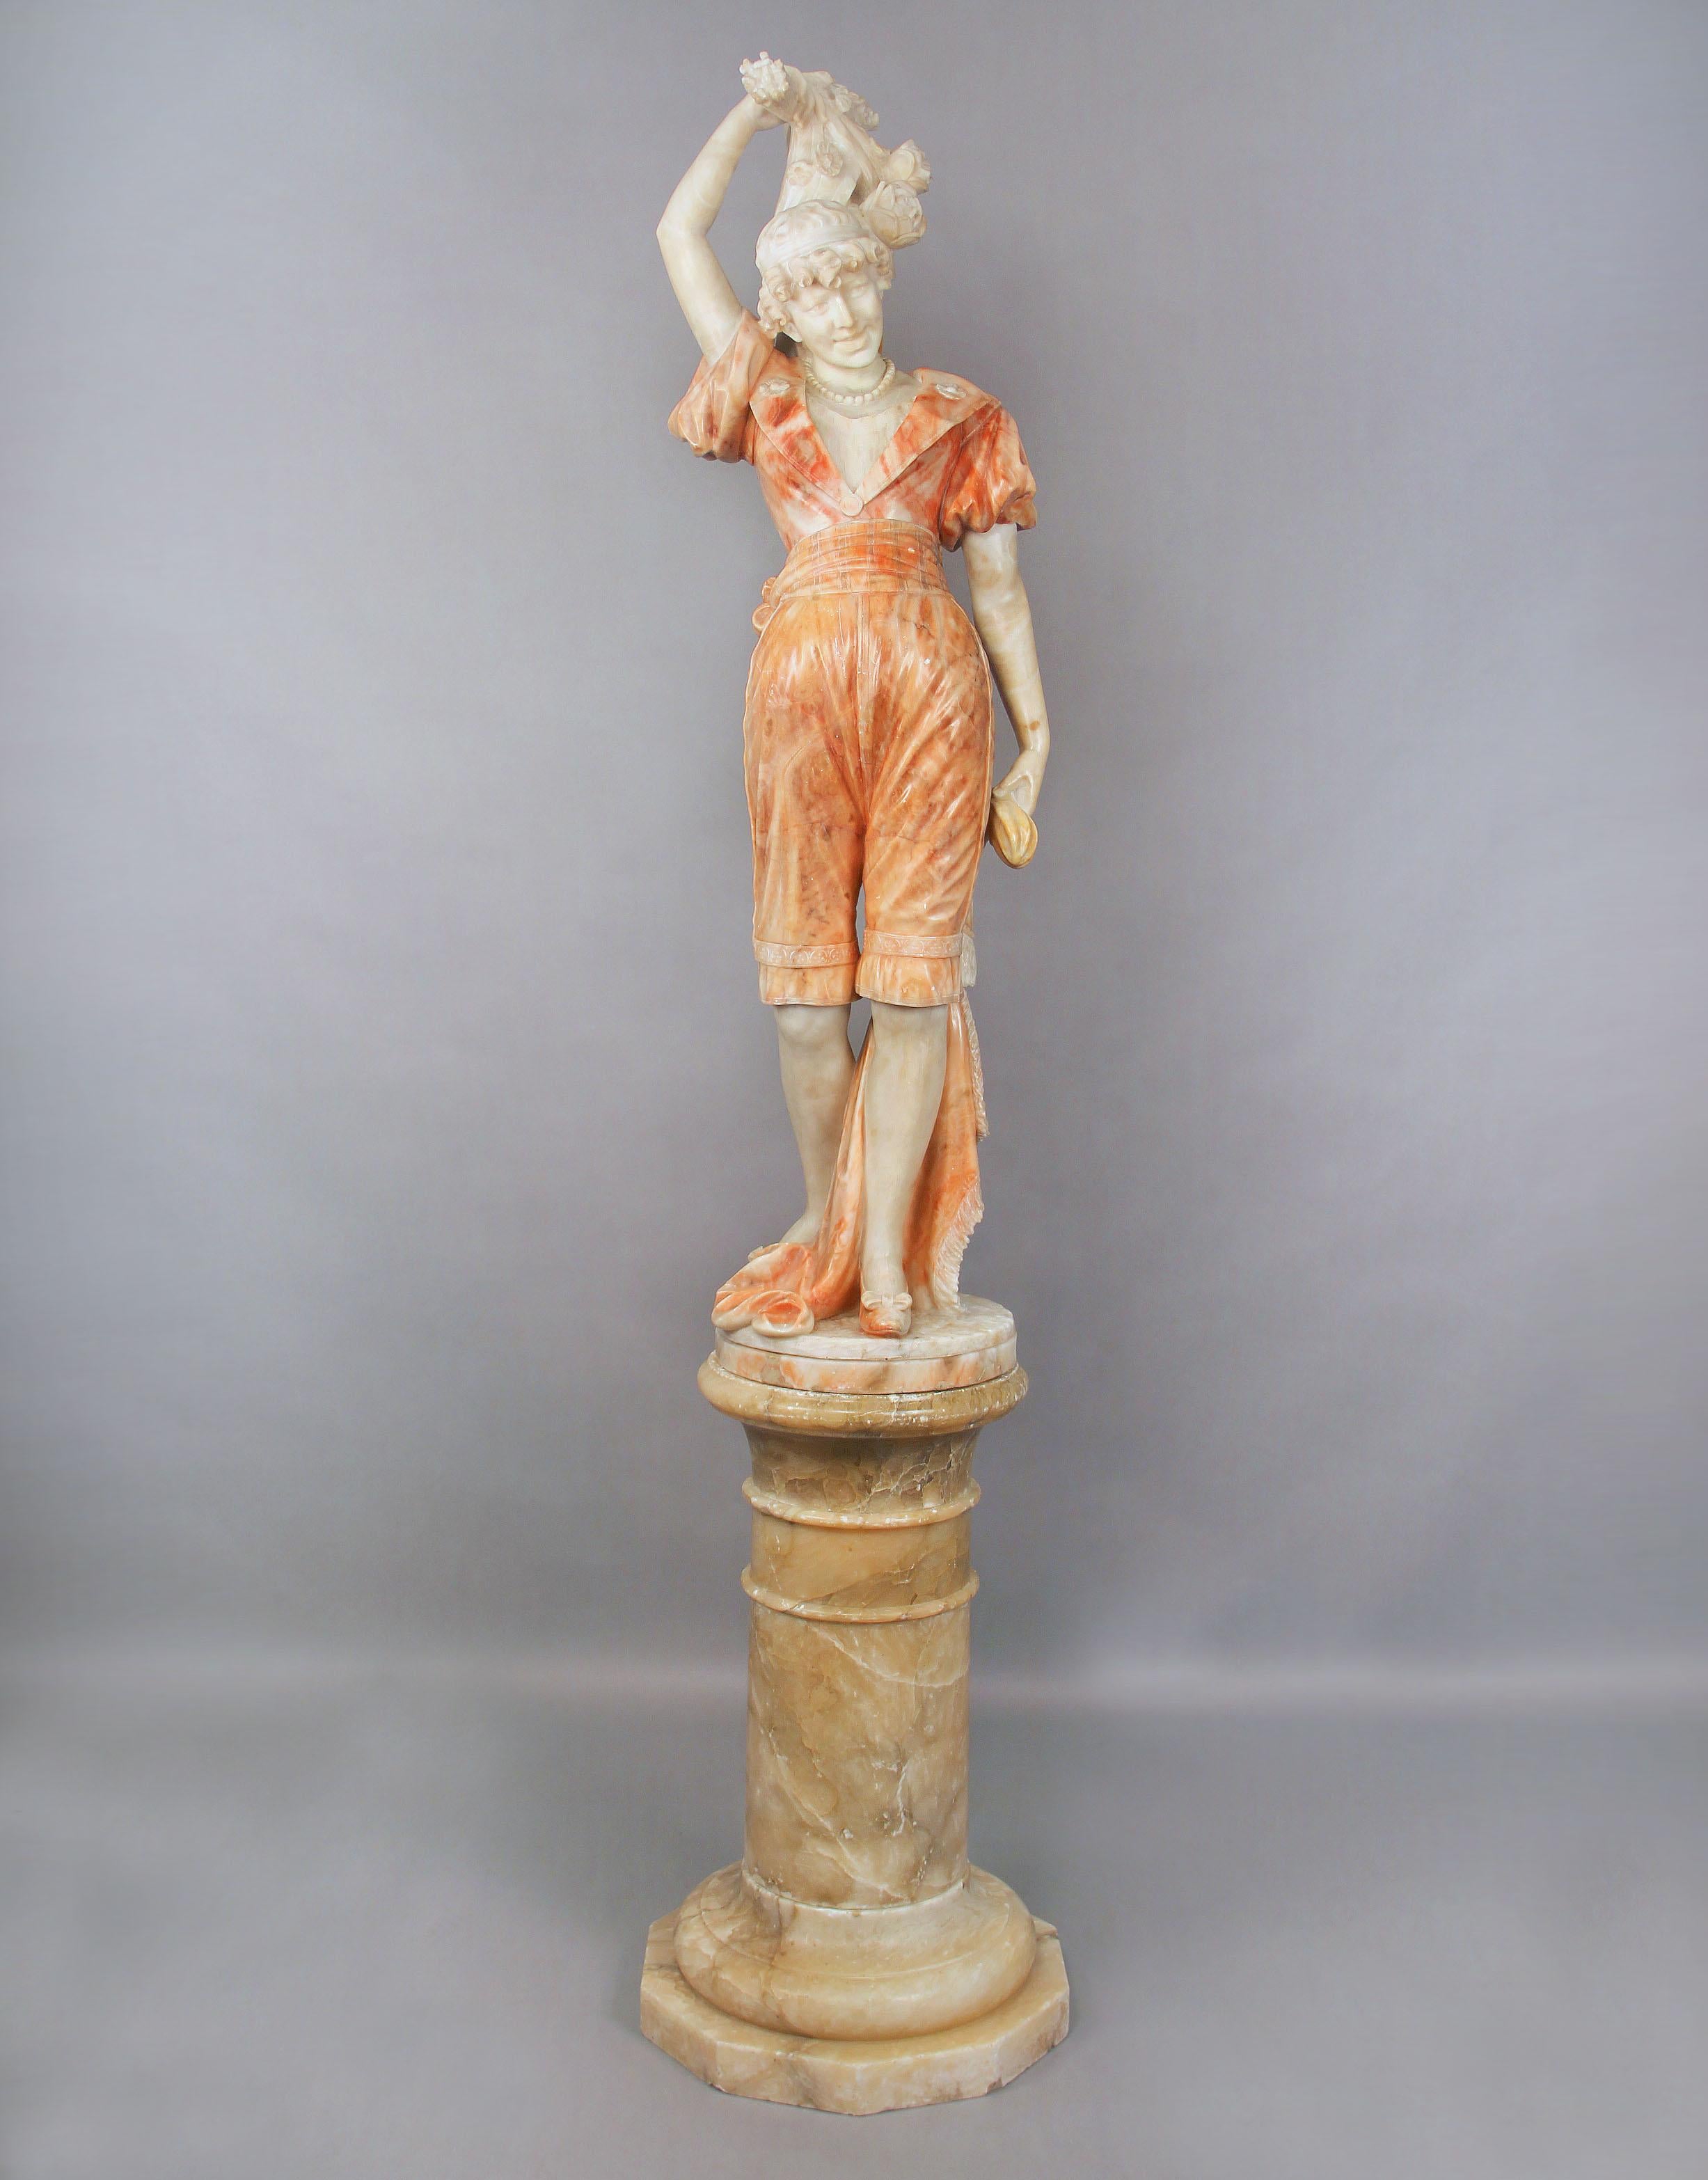 Belle figure en albâtre italienne sculptée de la fin du 19e siècle et du début du 20e siècle représentant une femme avec des fleurs.


La femme, vêtue d'un pantalon et d'une veste d'albâtre blanc veiné orange moucheté, la main tenant un bouquet de